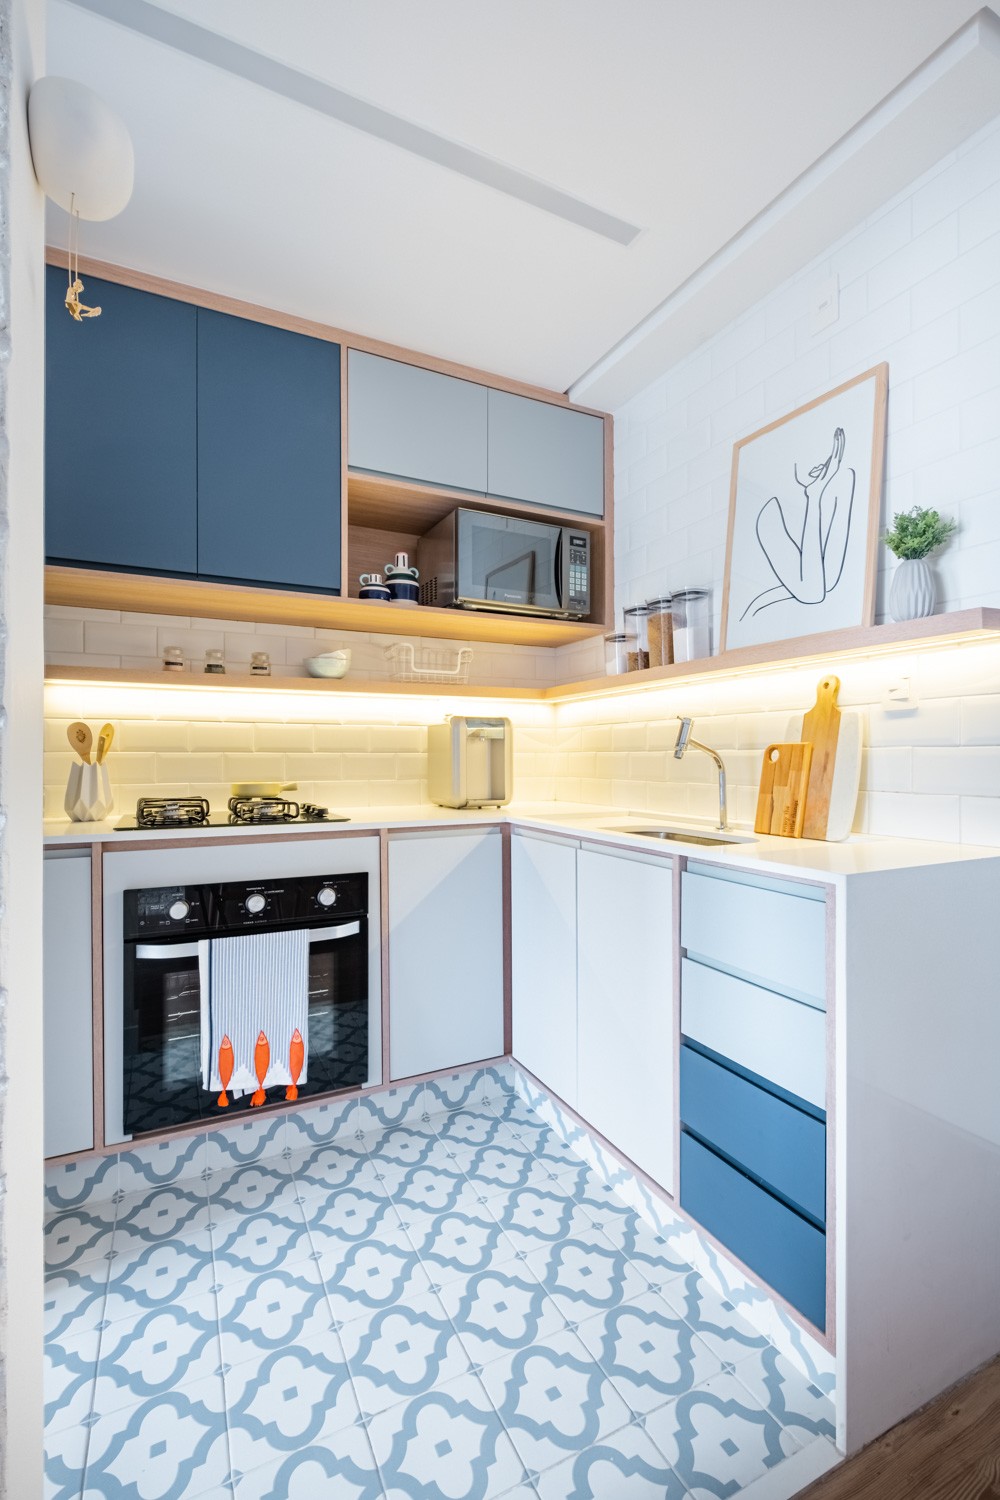 COZINHA | O diferencial da cozinha é o uso do MDF colorido em três tons de azul. O piso da Colormix também marca a cor (Foto: Divulgação / Nathalie Artaxo)